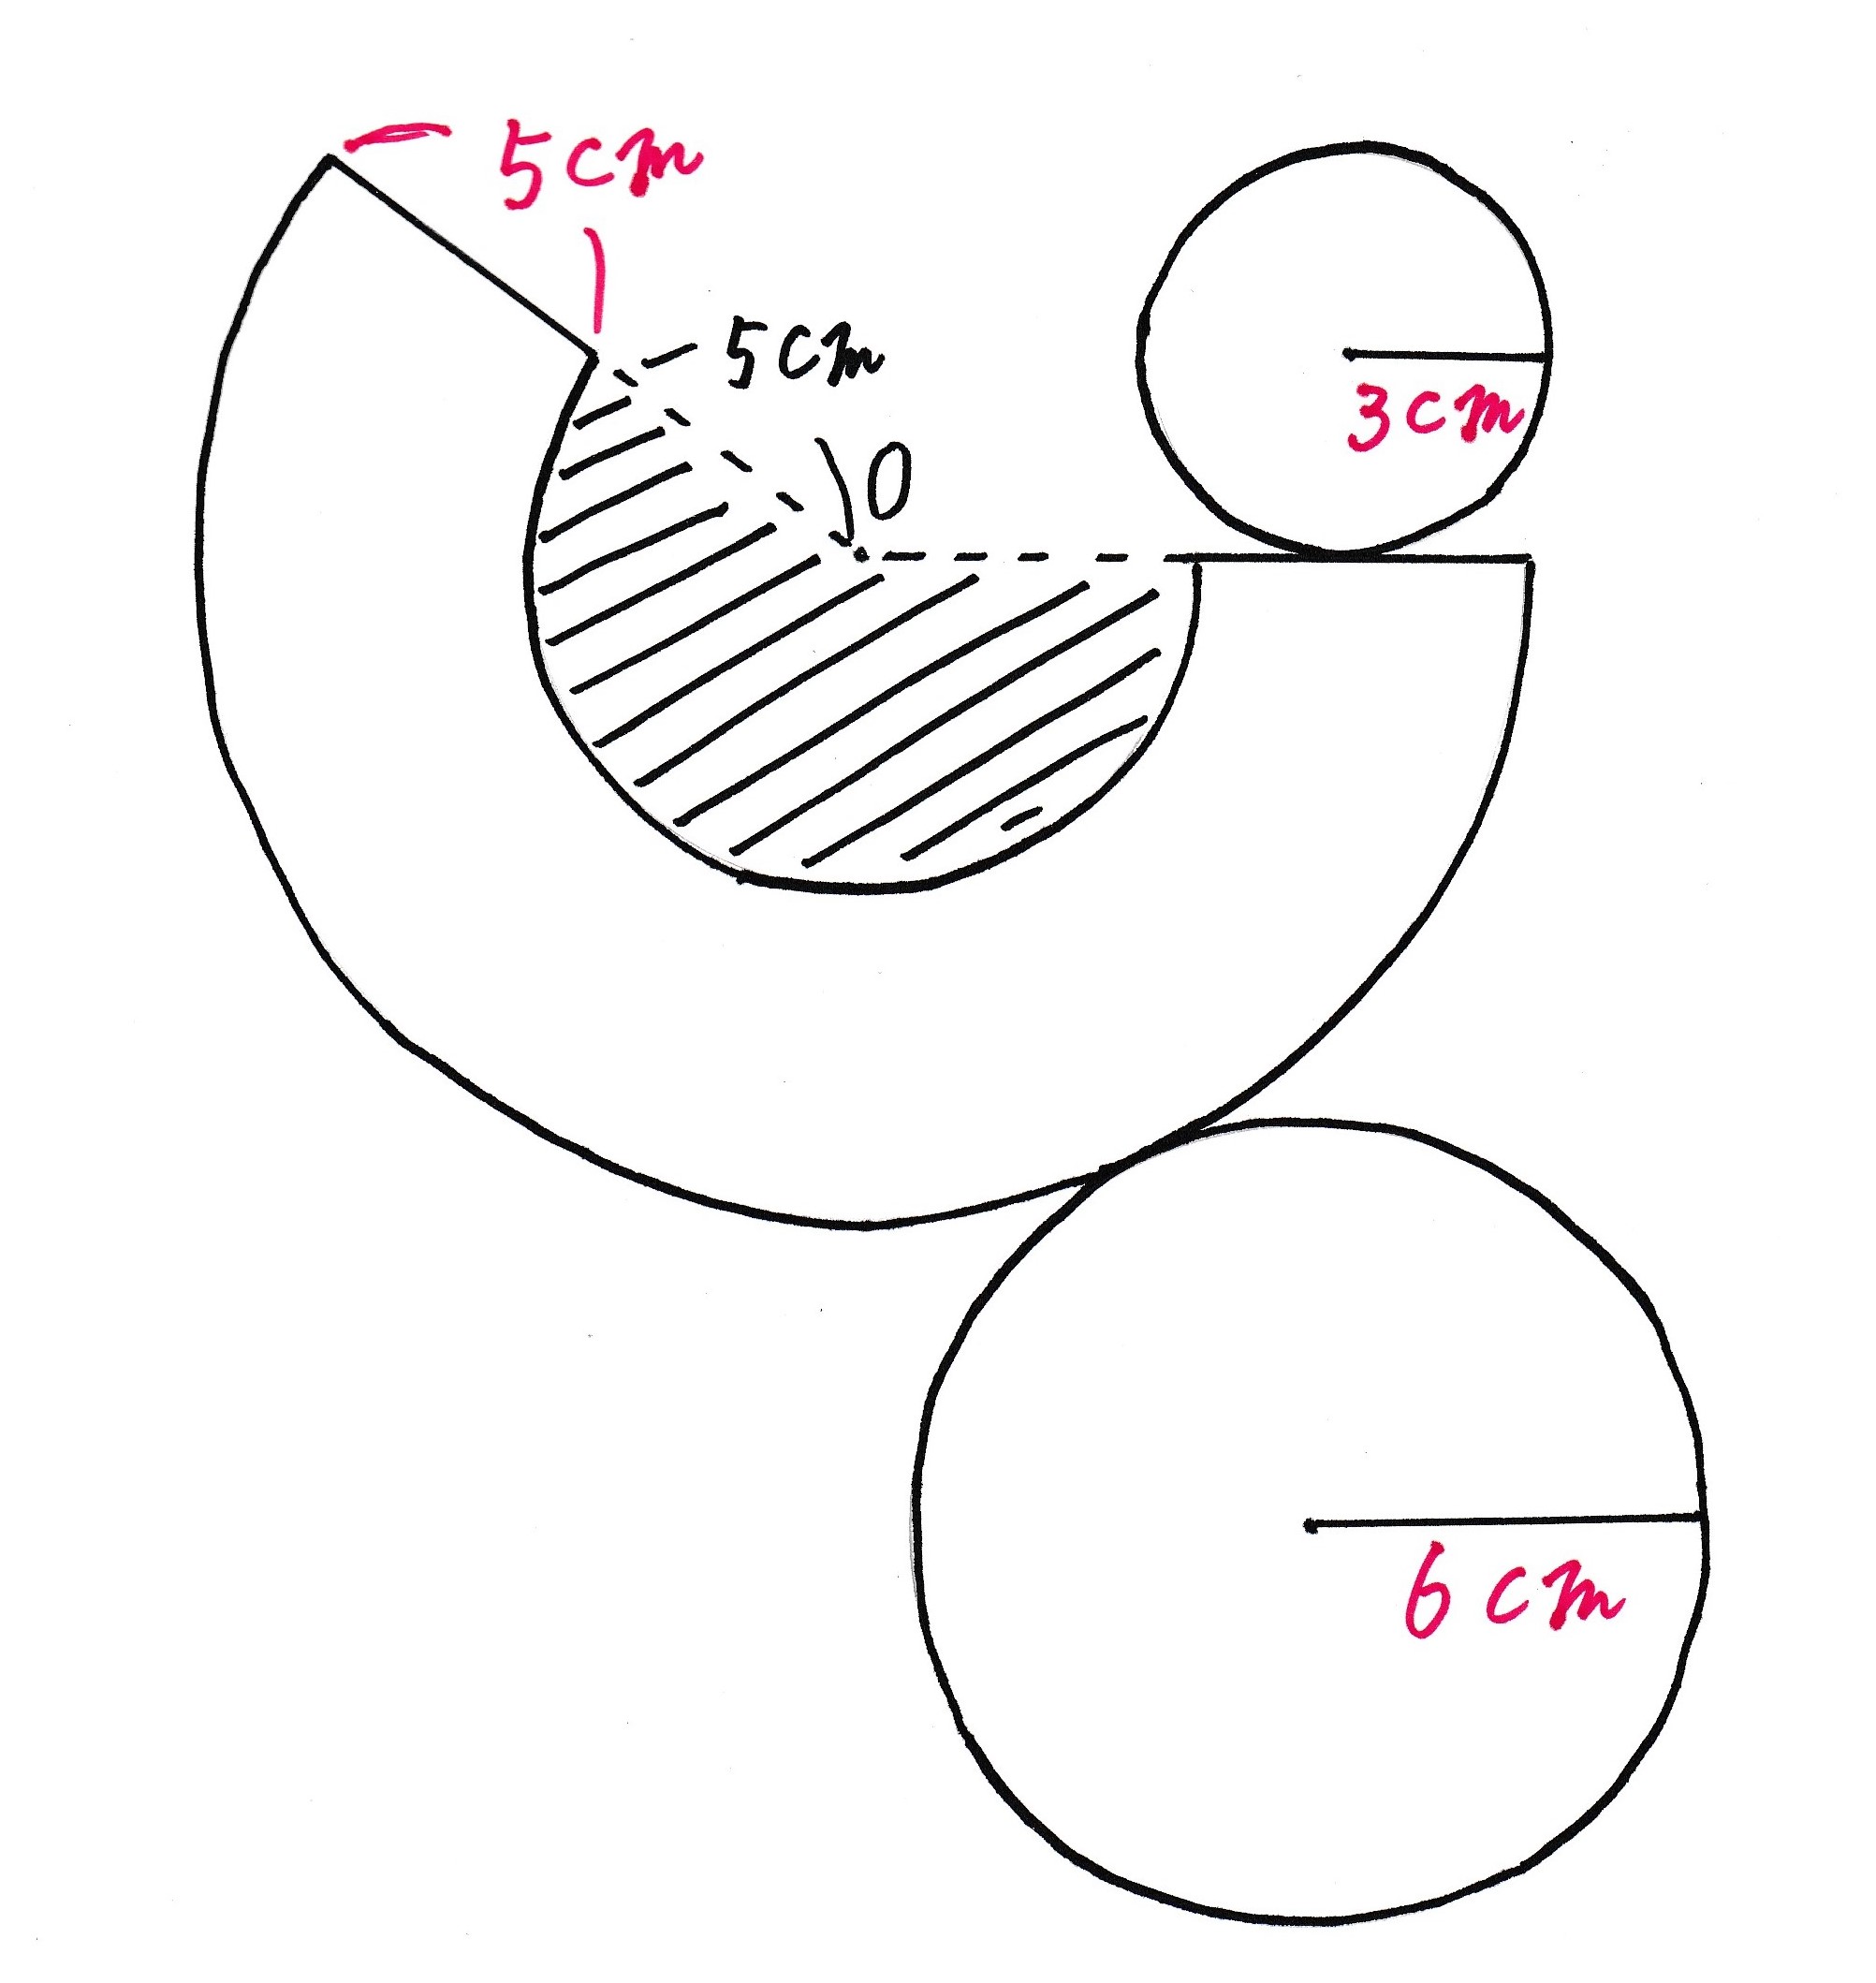 扇形 弧 の 求め 方 扇 おうぎ 形の面積を求める公式と弧の長さの求め方